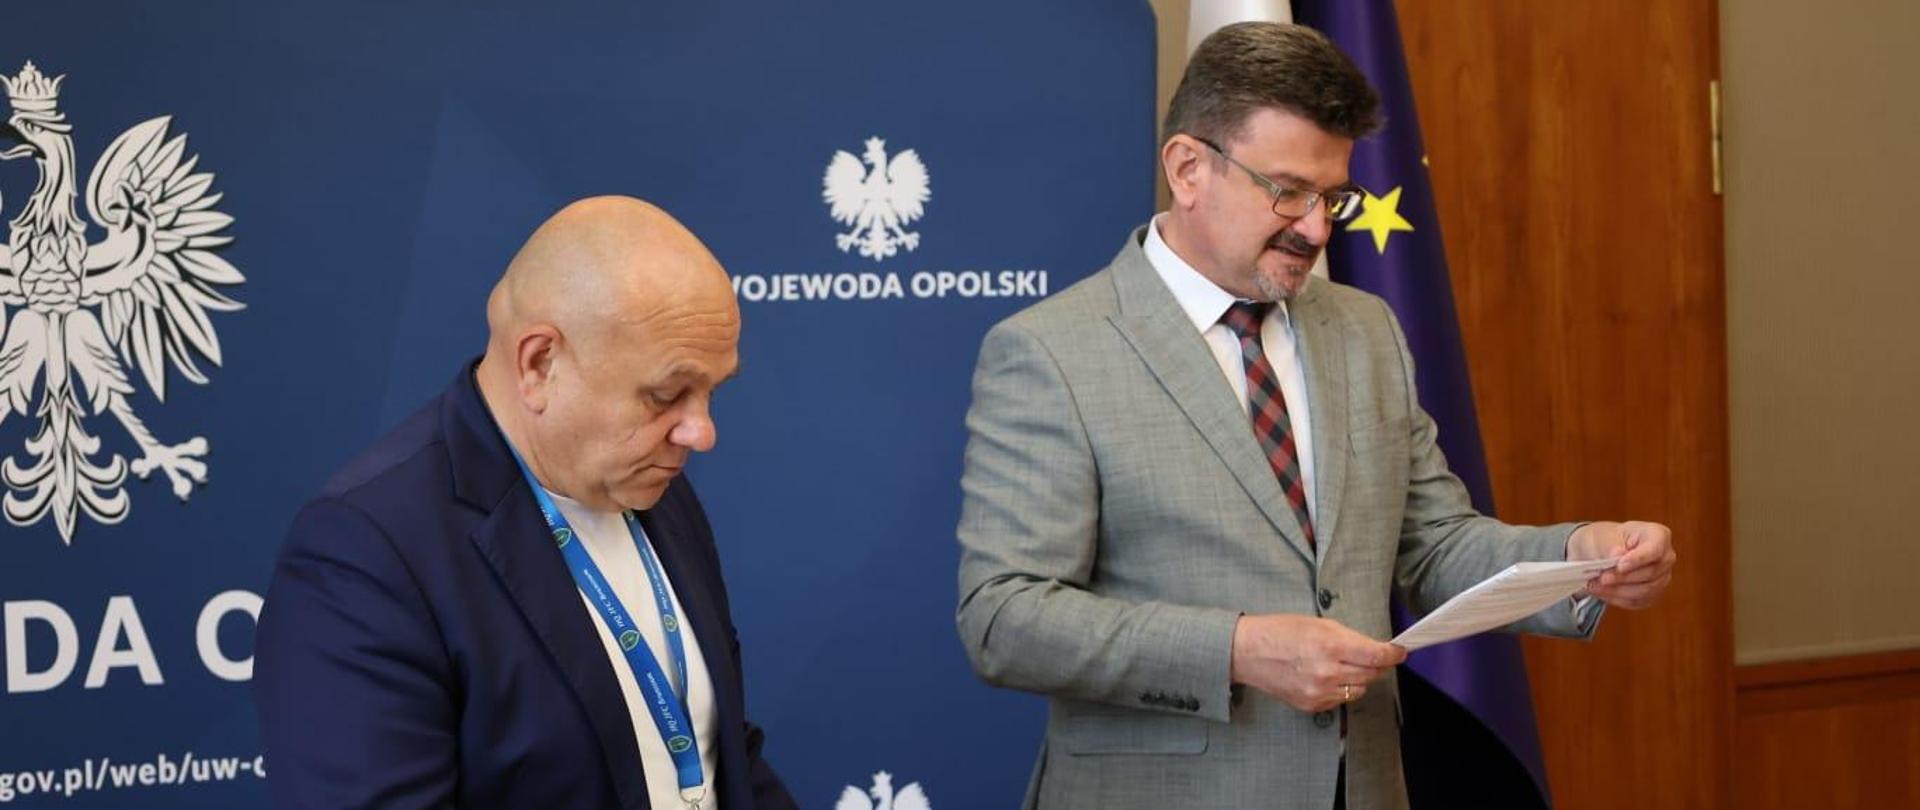 Na zdjęciu widać Wicewojewodę Opolskiego Piotra Pośpiecha oraz Eksperta BW Wojciecha Grzybowskiego. 